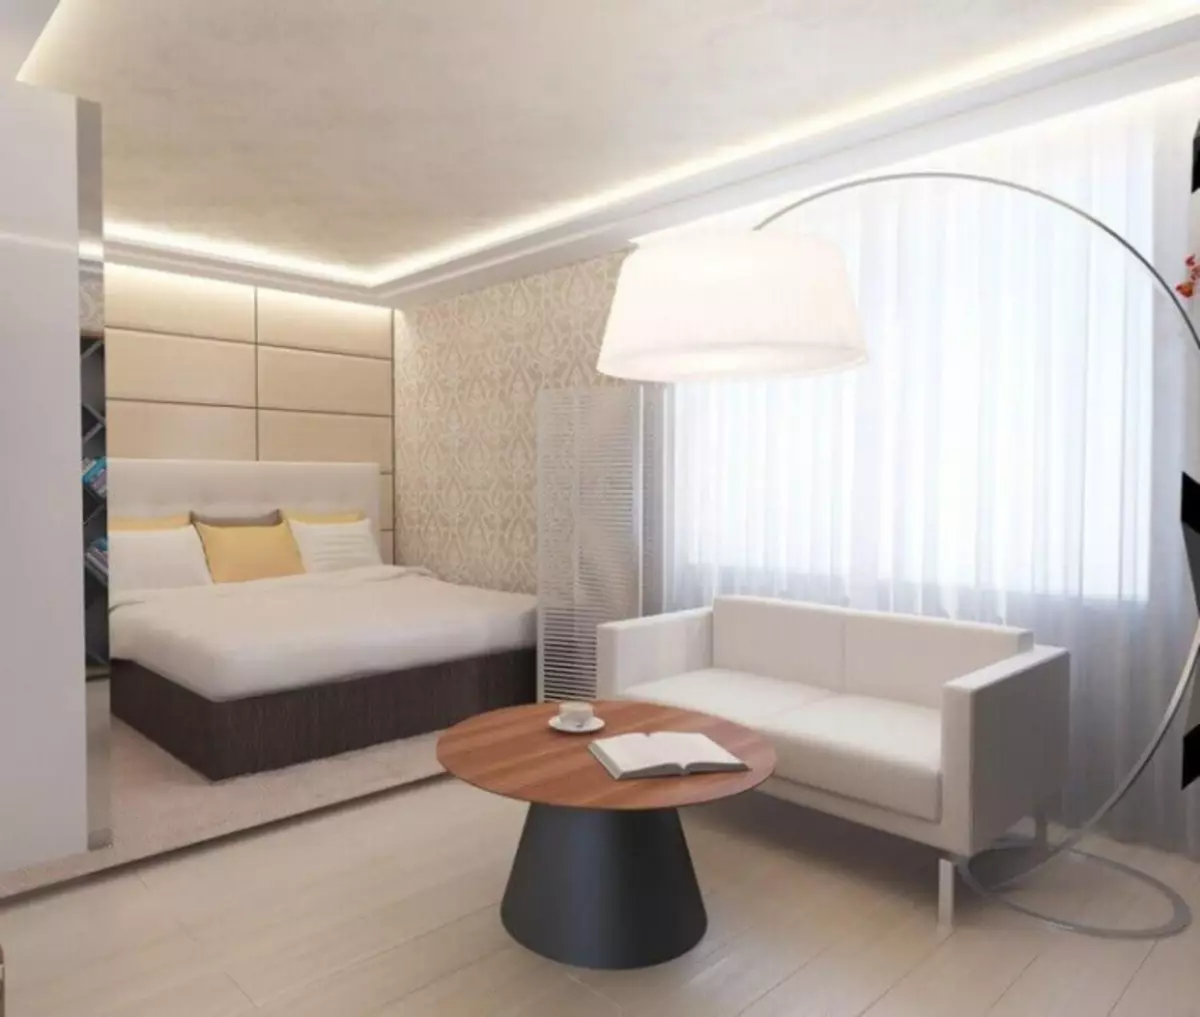 Thiết kế phòng khách phòng ngủ: Cách kết hợp một góc nghỉ ngơi và một nơi để ngủ (40 ảnh)